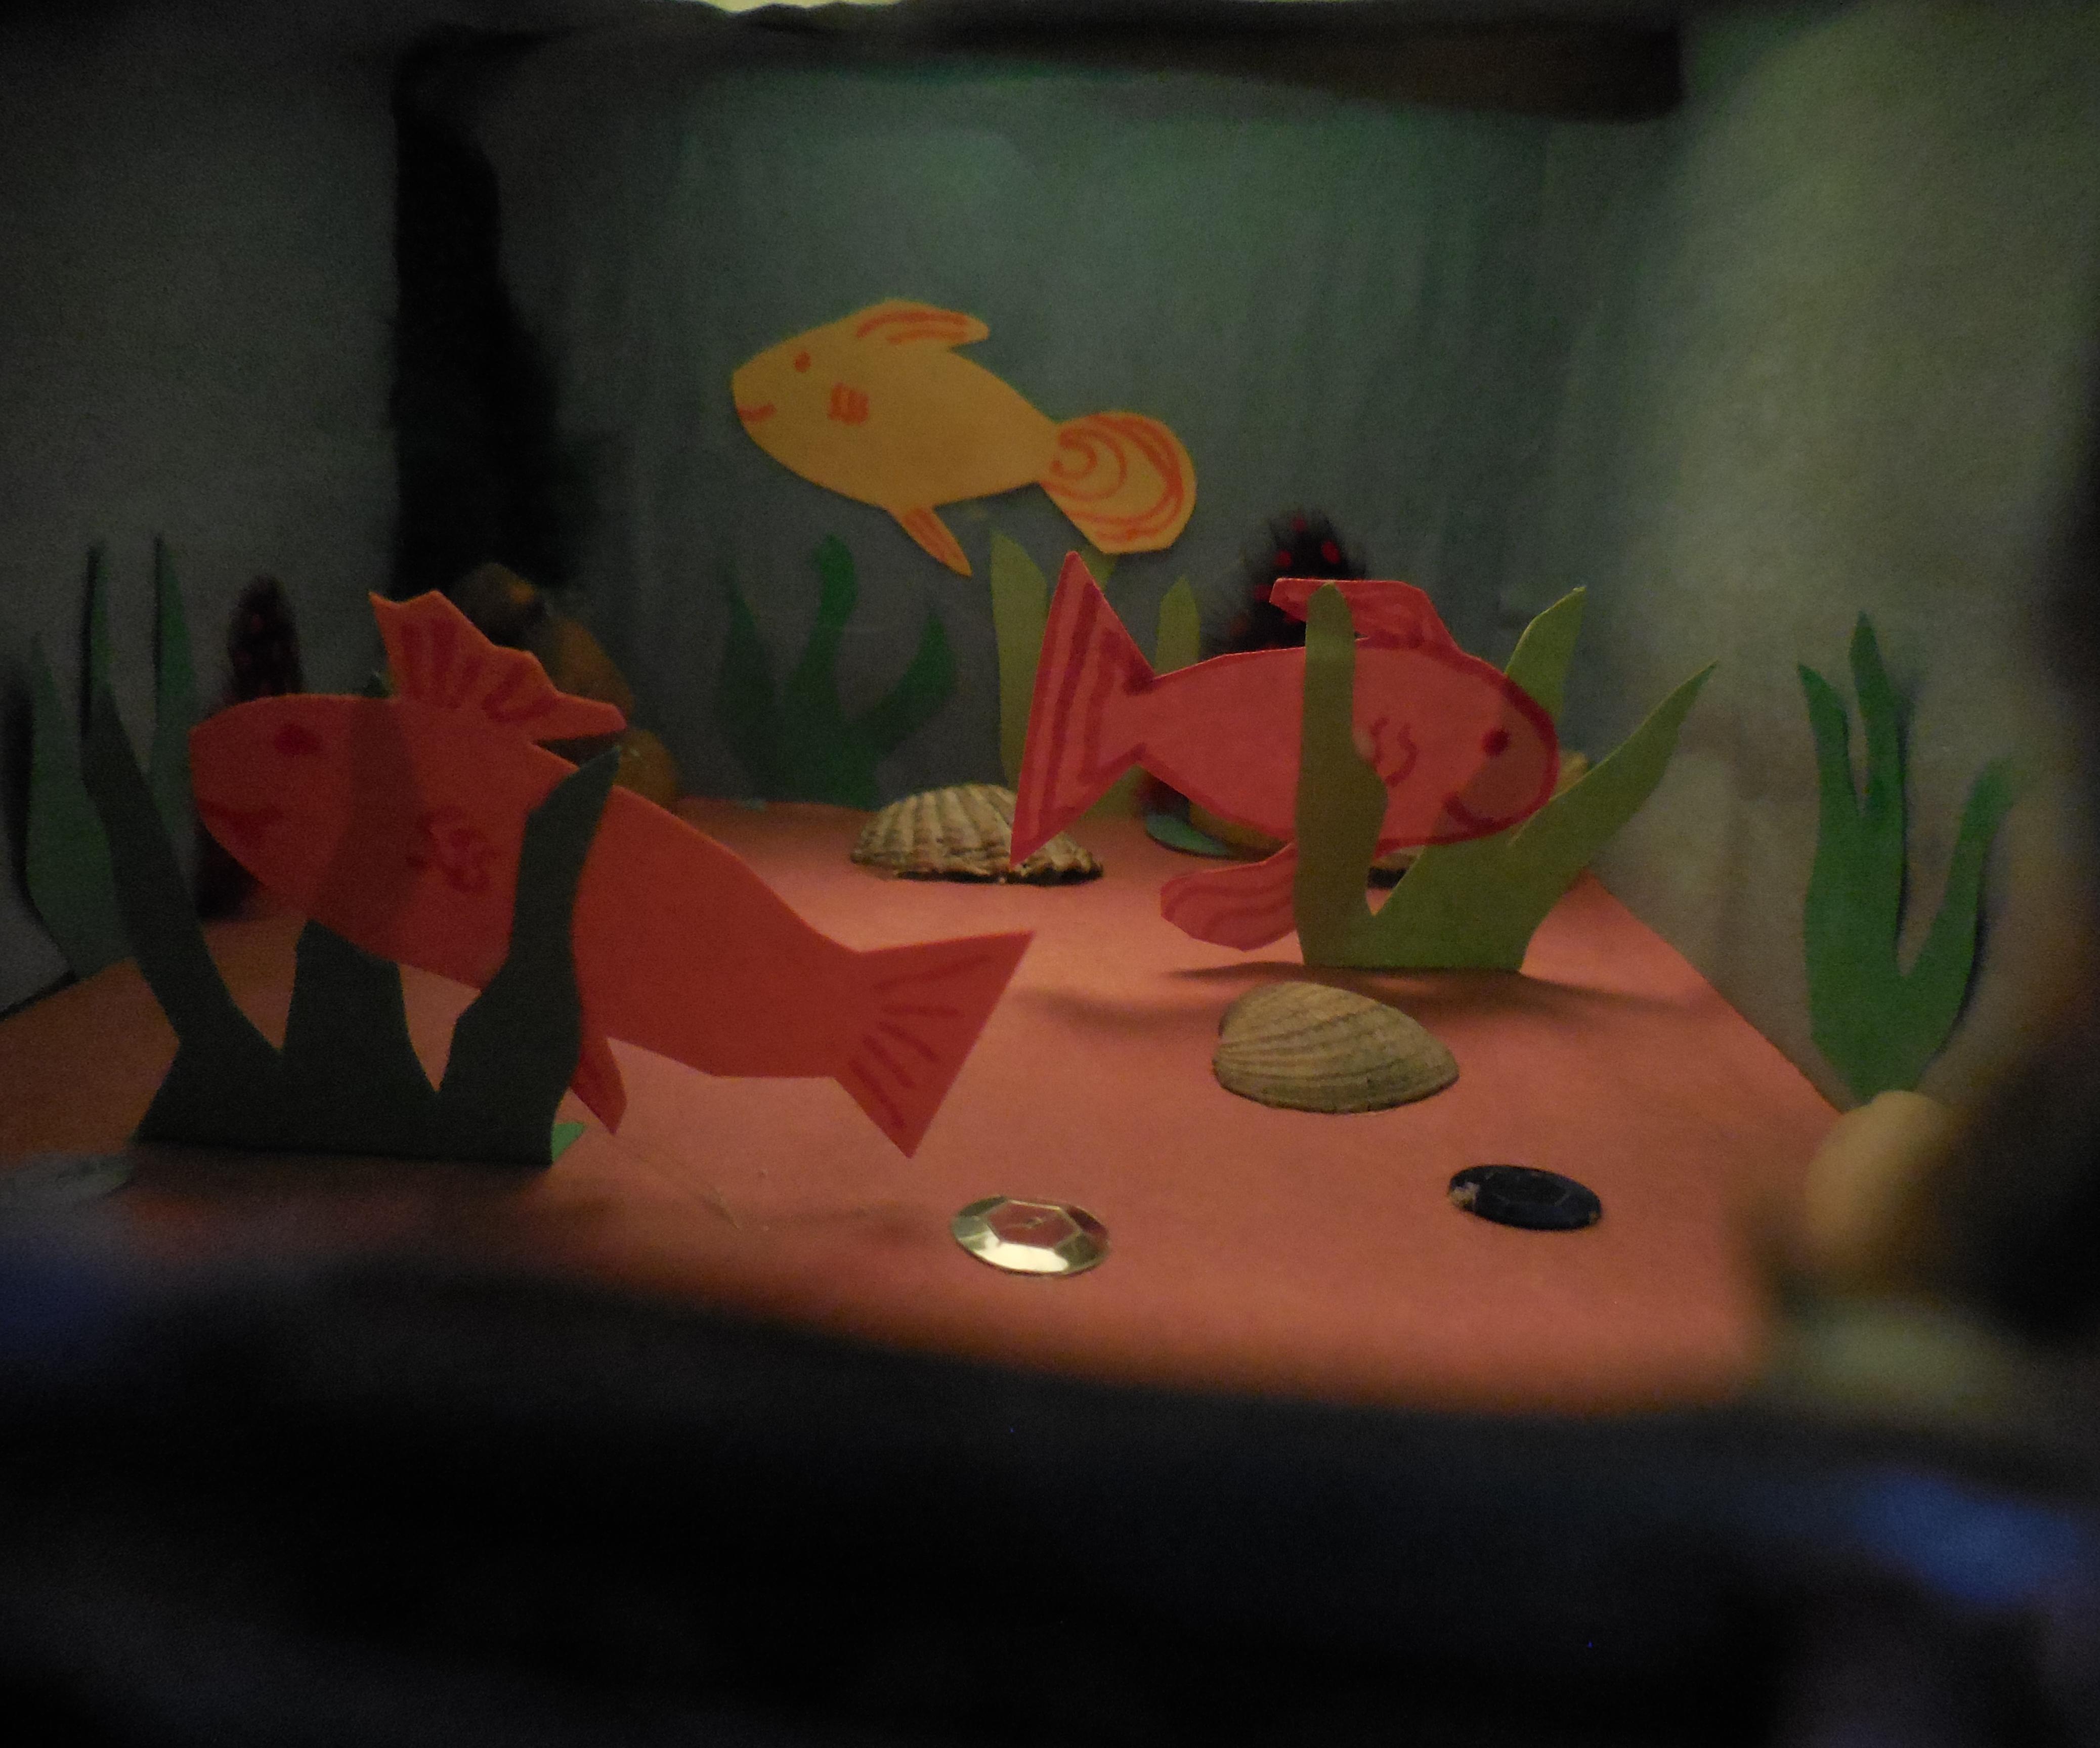 Underwater Shoebox Diorama